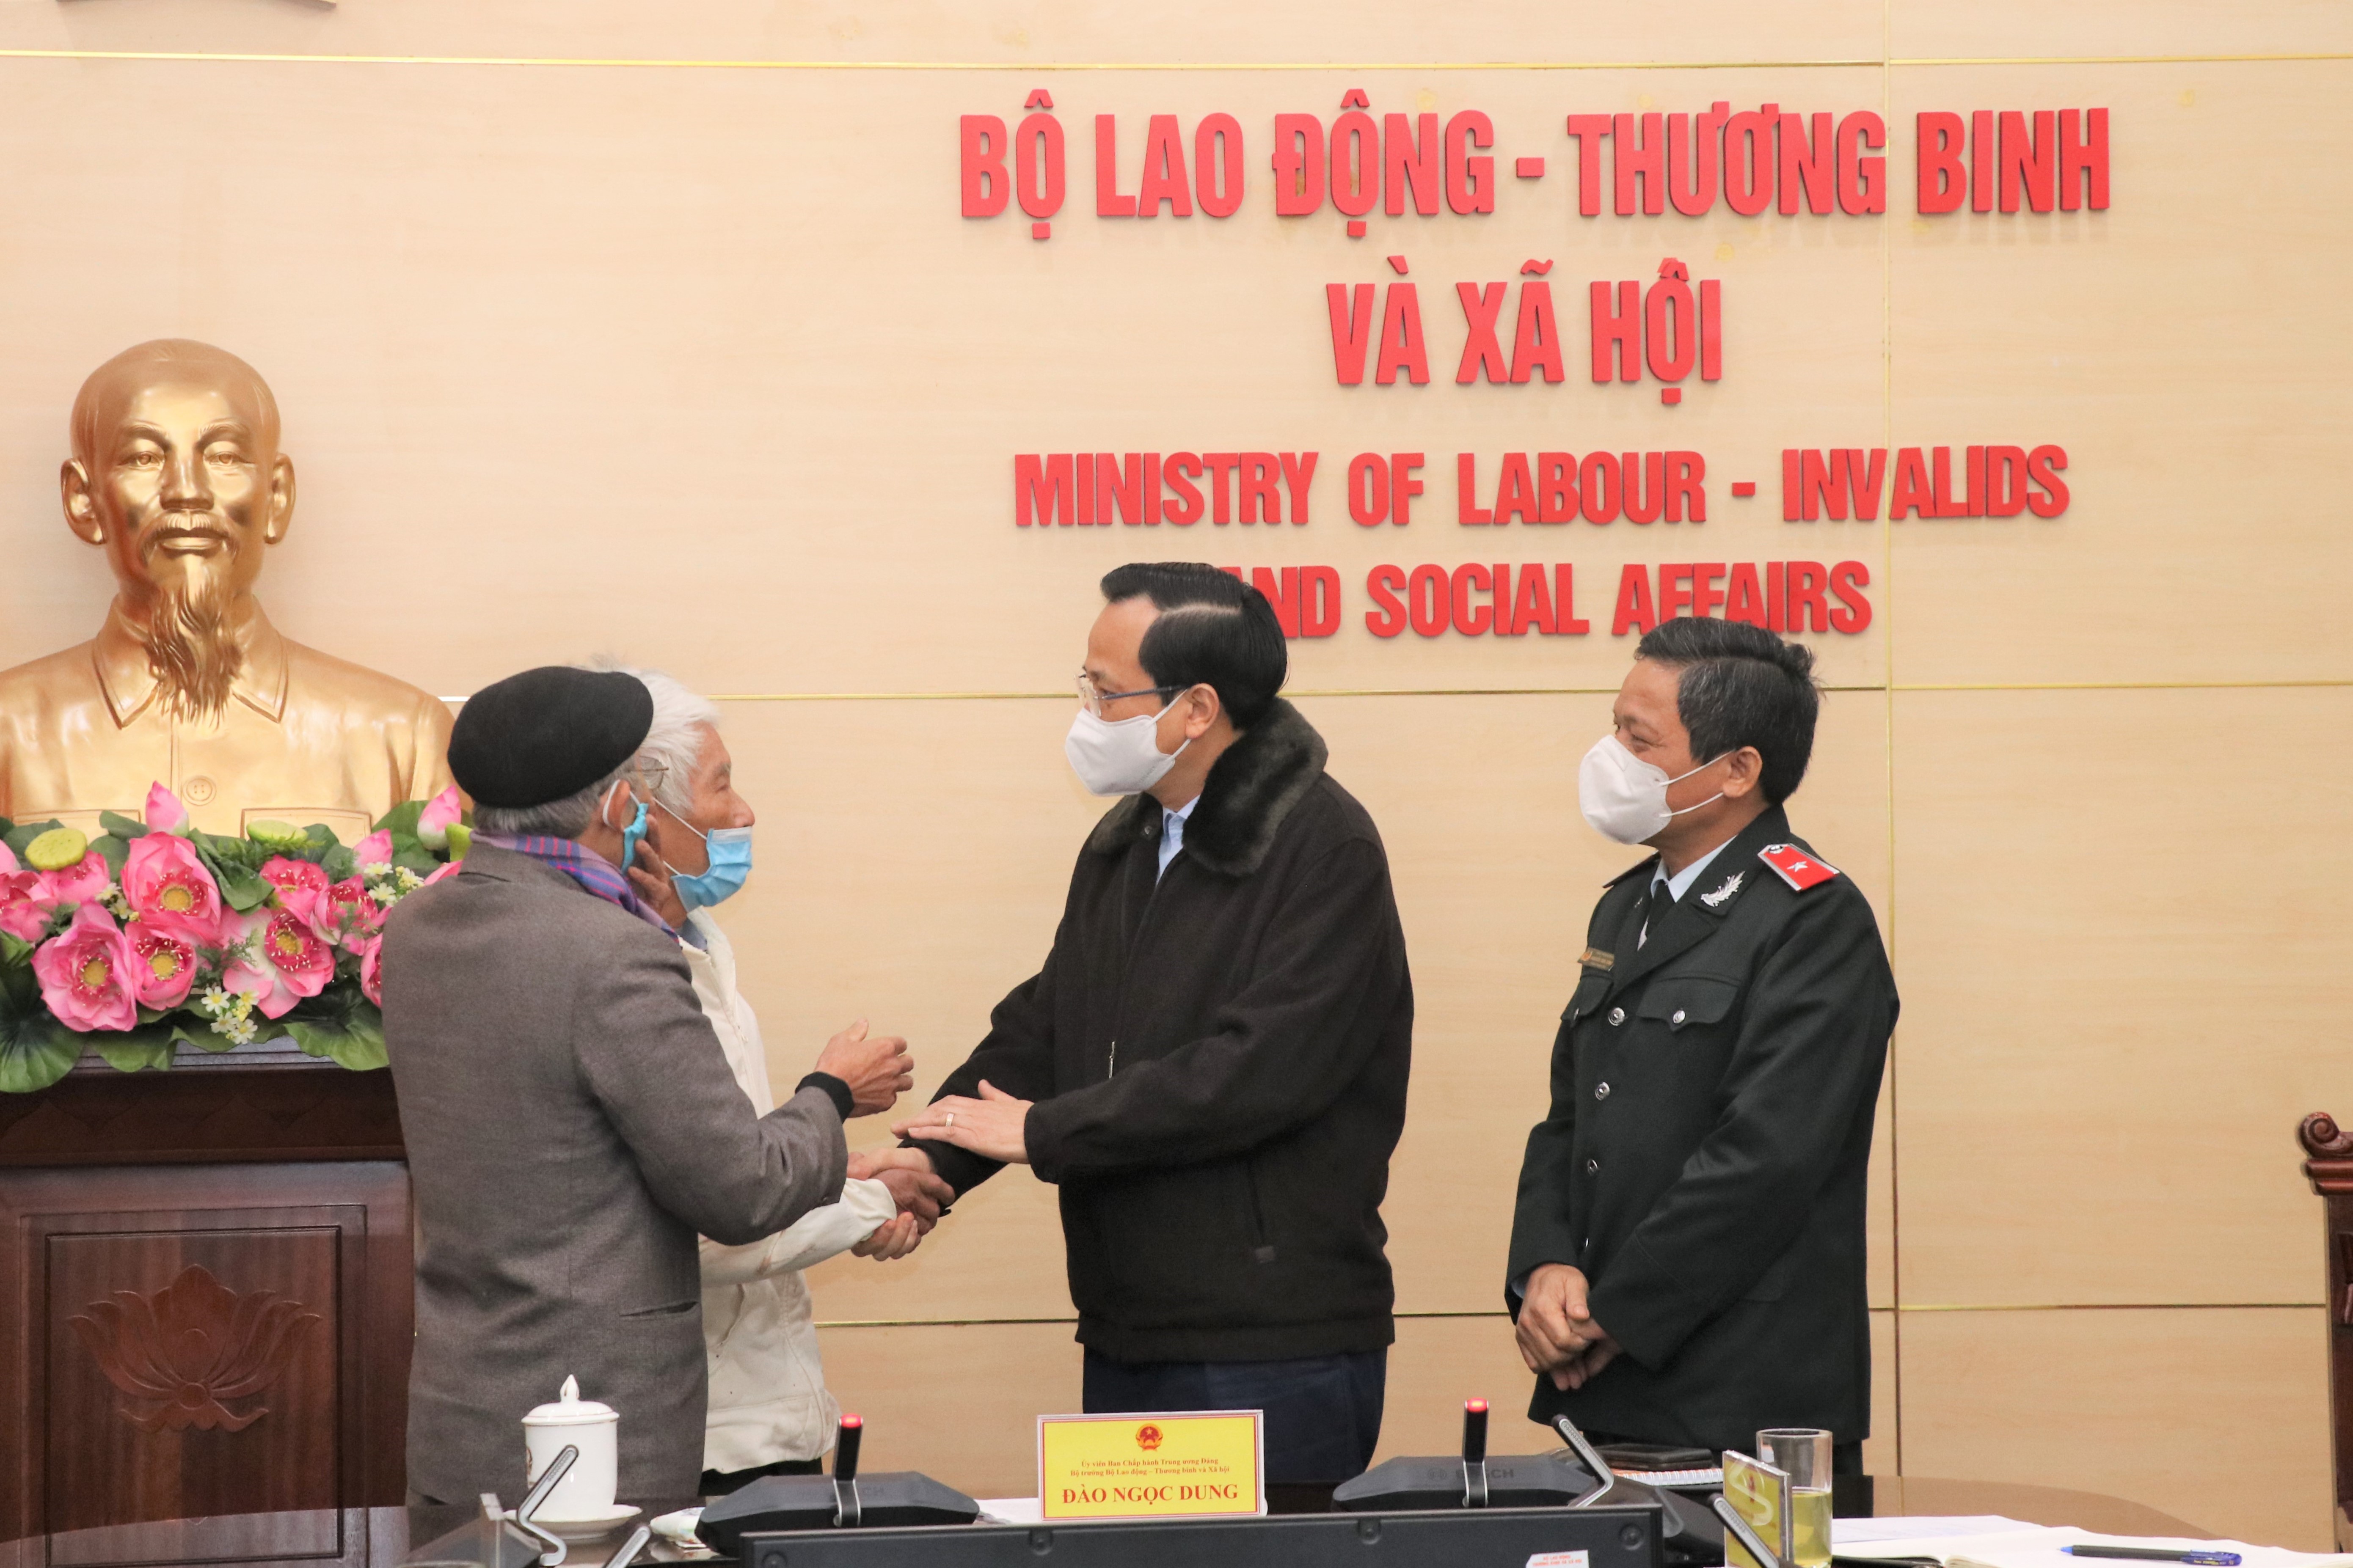 Bộ trưởng Đào Ngọc Dung tiếp công dân, giải quyết các vấn đề về chính sách ưu đãi người có công